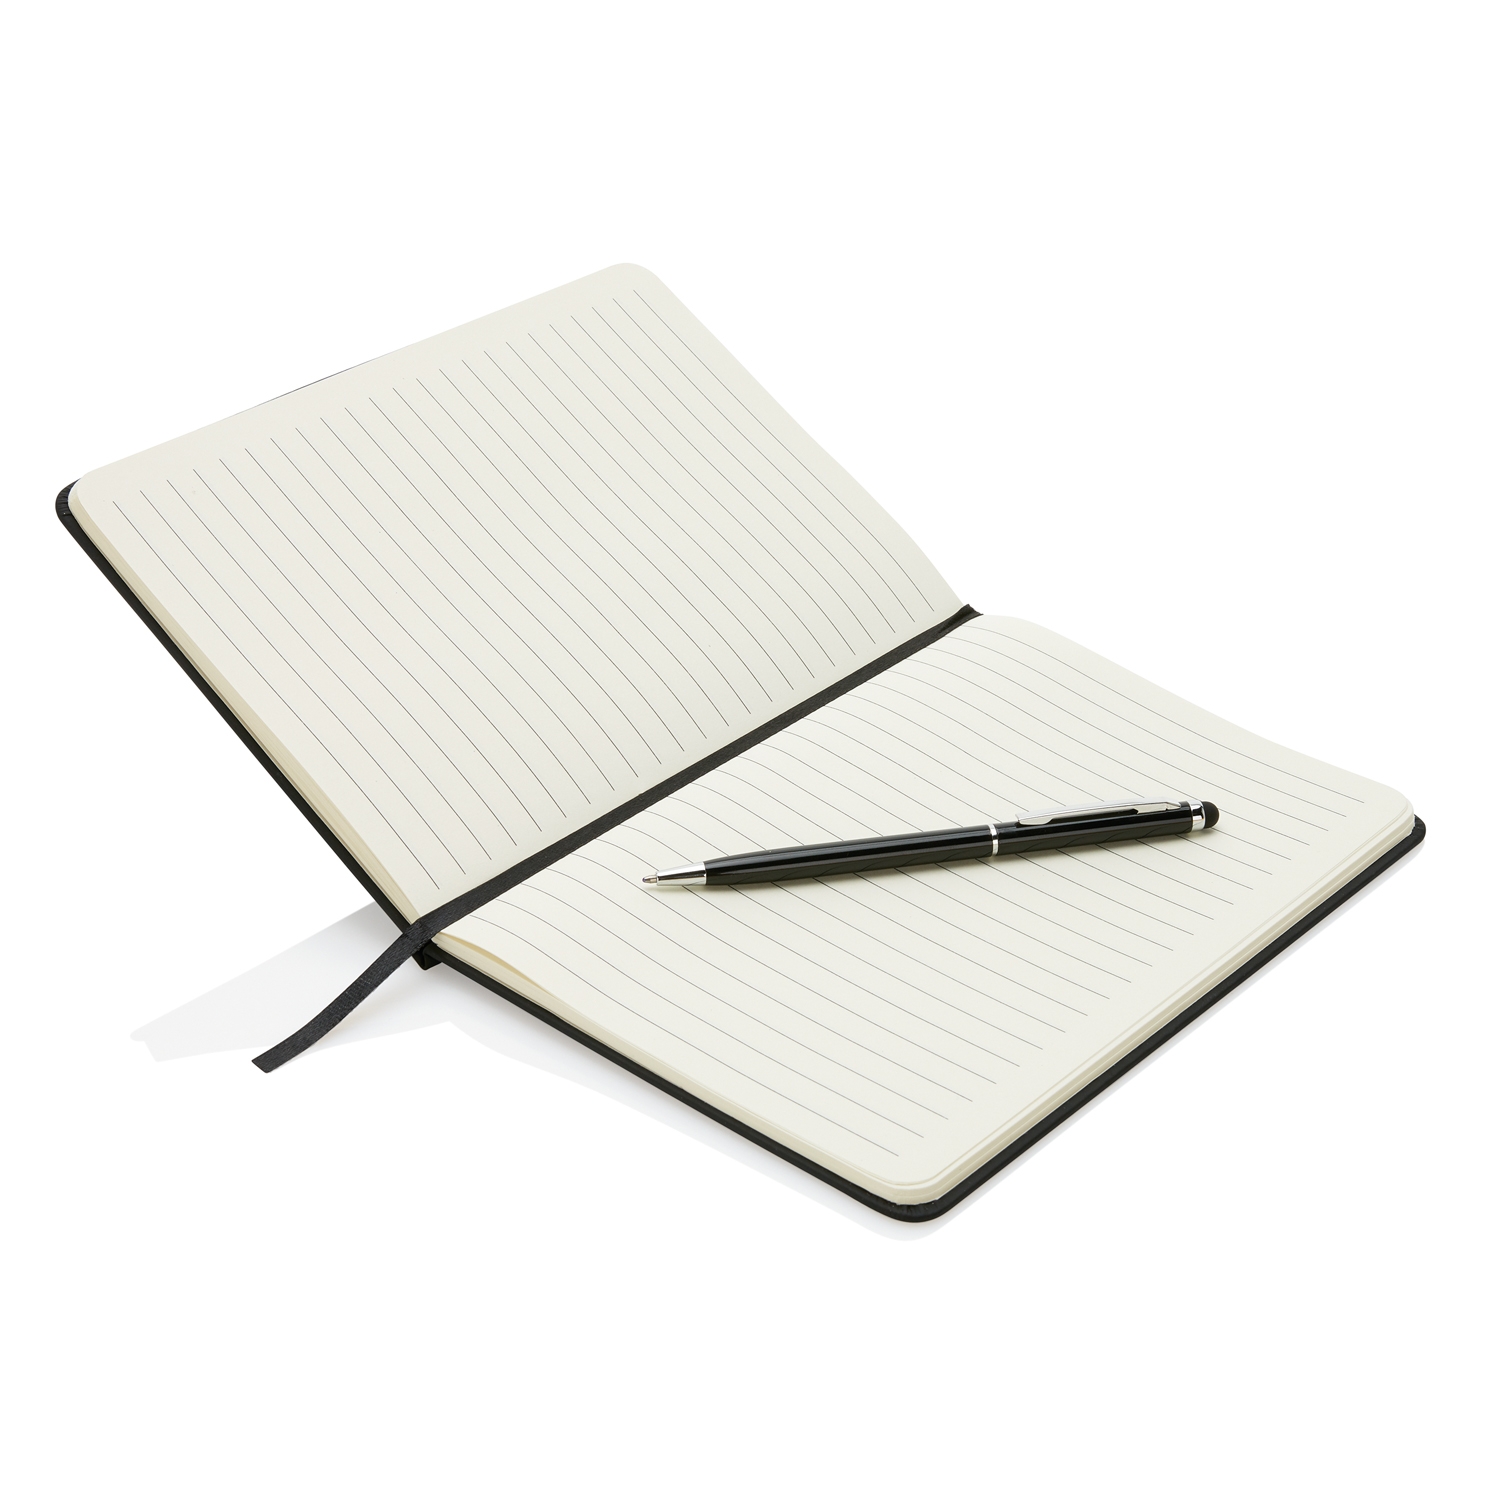 Блокнот для записей Deluxe формата A5 и ручка-стилус, черный, бумага; нержавеющая сталь